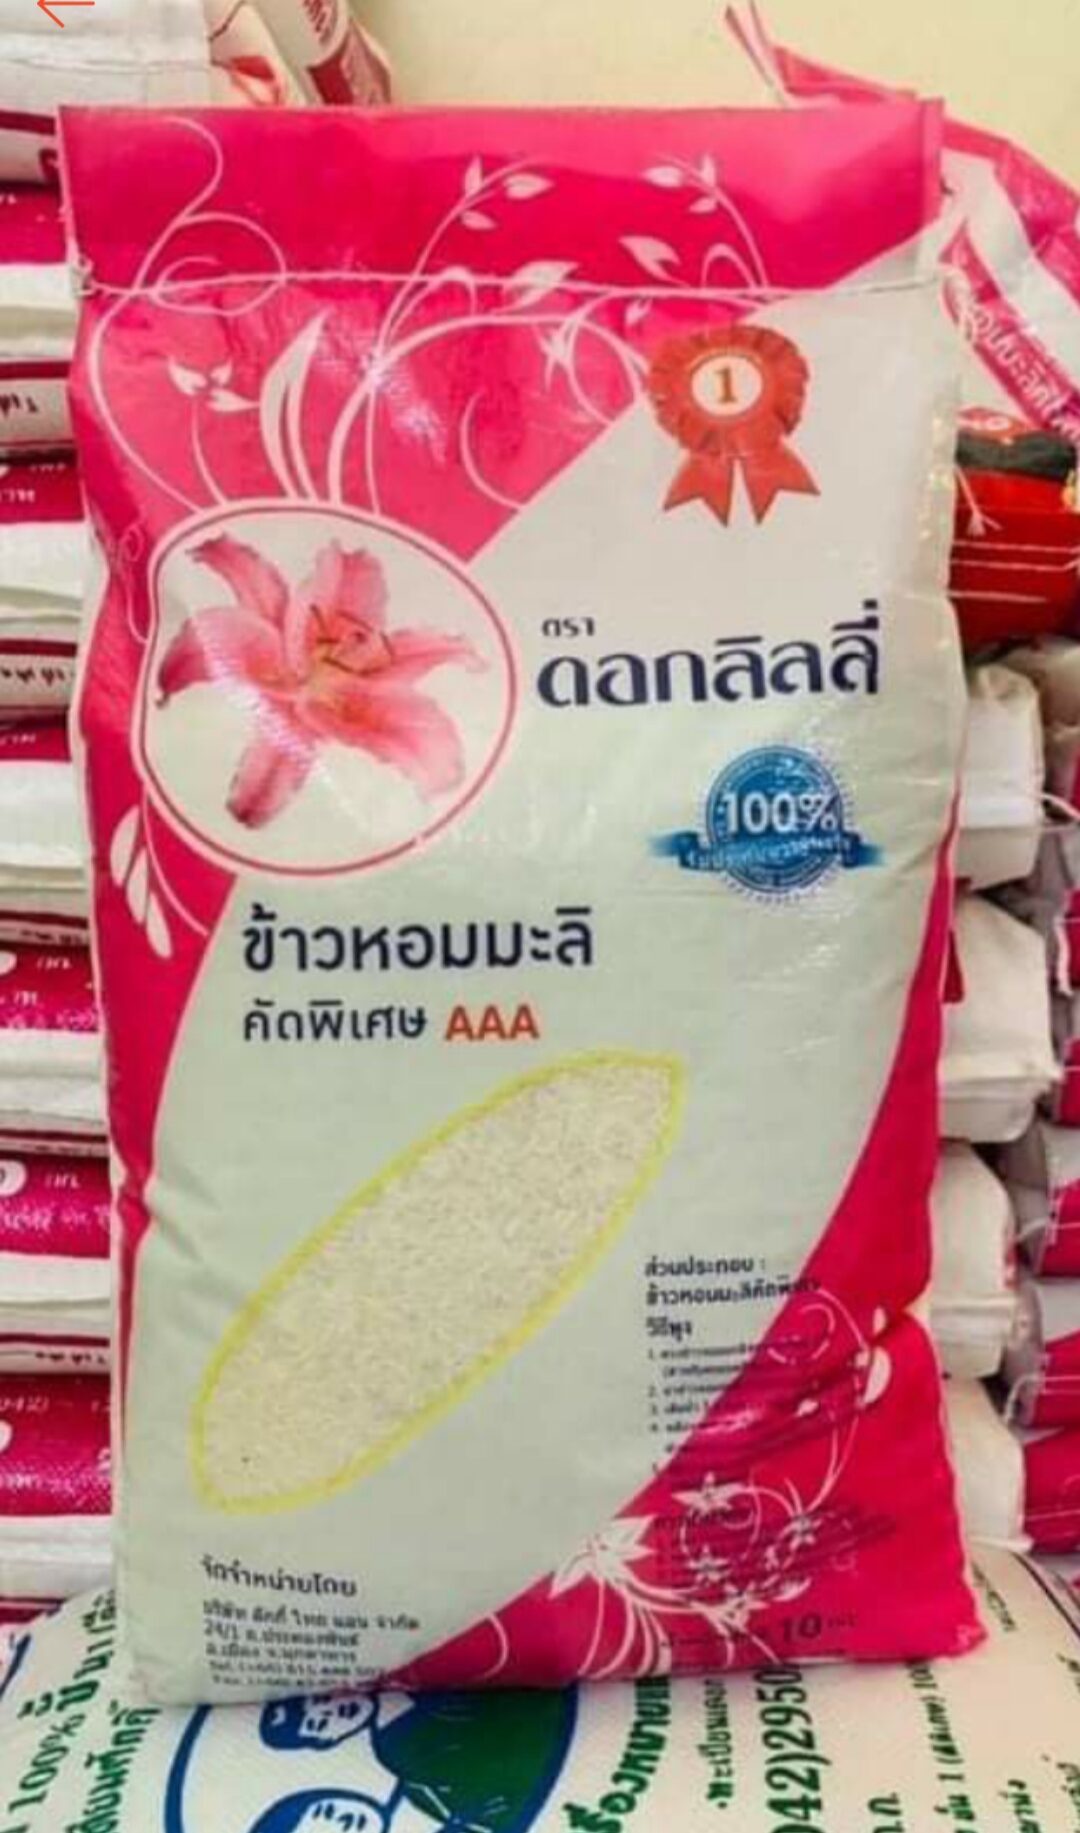 HCMTúi 3kg gạo Hom Mali nhập khẩu Thái Lan bao dẻo thơm ngon thương hạng